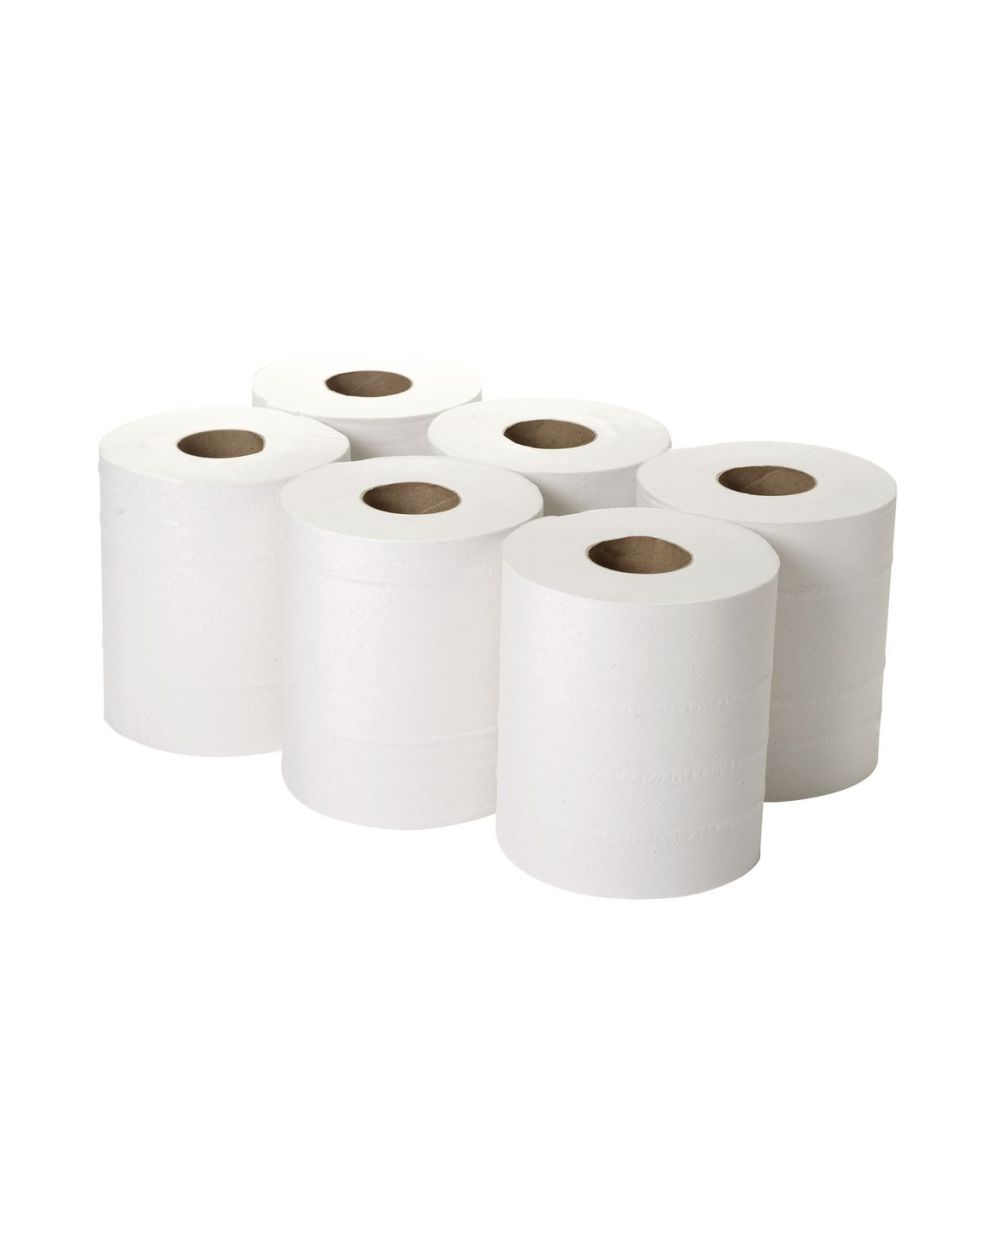 Roll 1 6. Рулон бумаги. Бумага в рулонах для производства салфеток. Упаковка рулонов бумаги. Салфетки в рулоне (бумага+пленка).